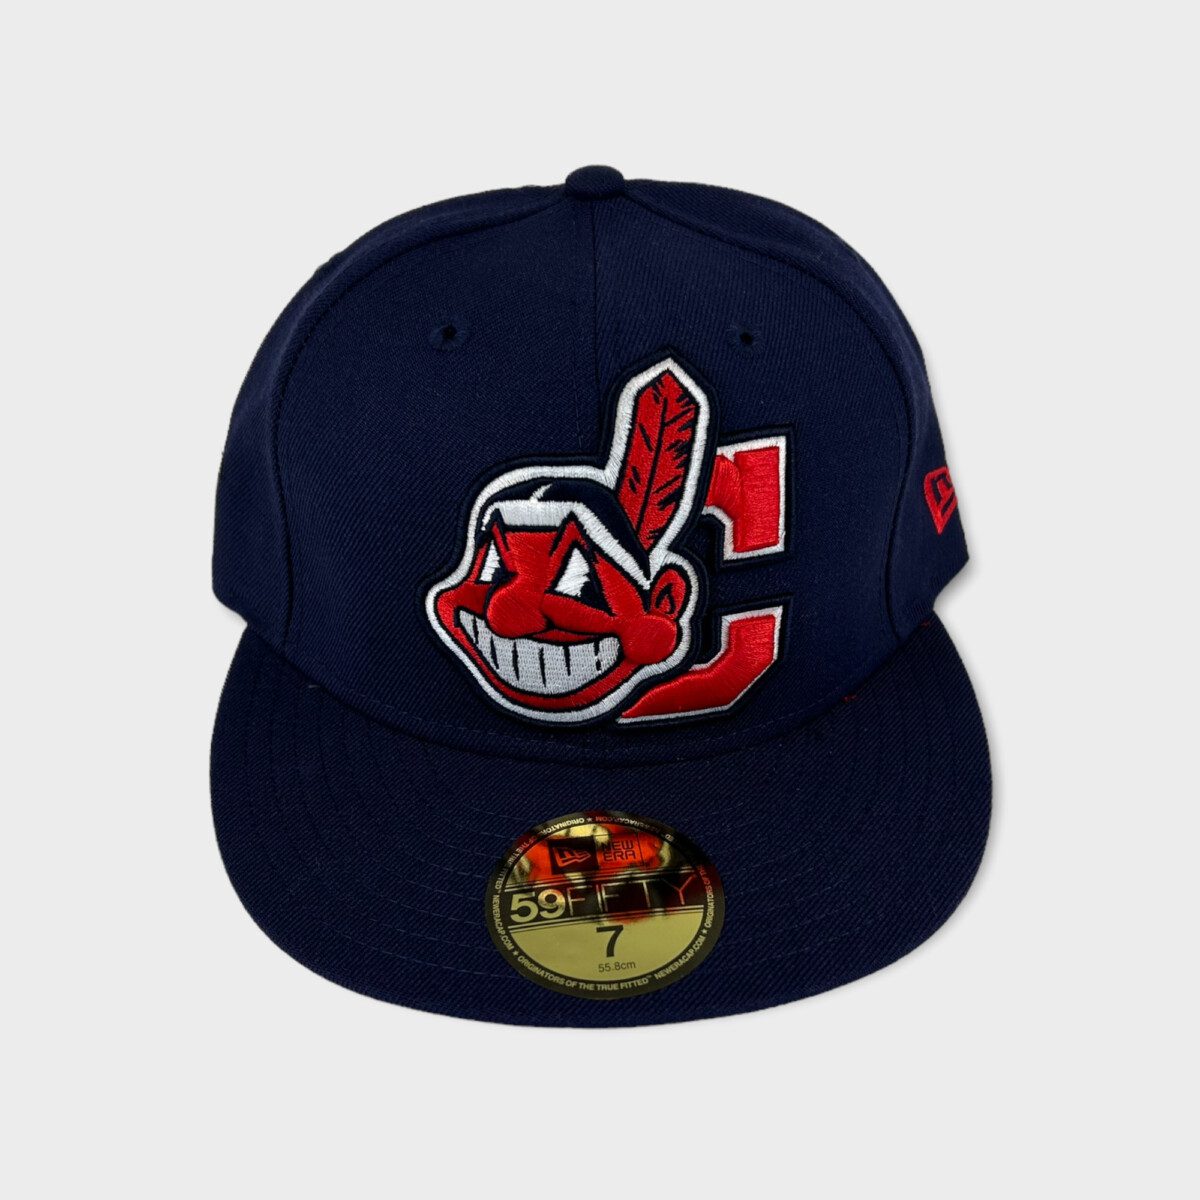 Cleveland Indians MLB New Era fitted hat OG logo